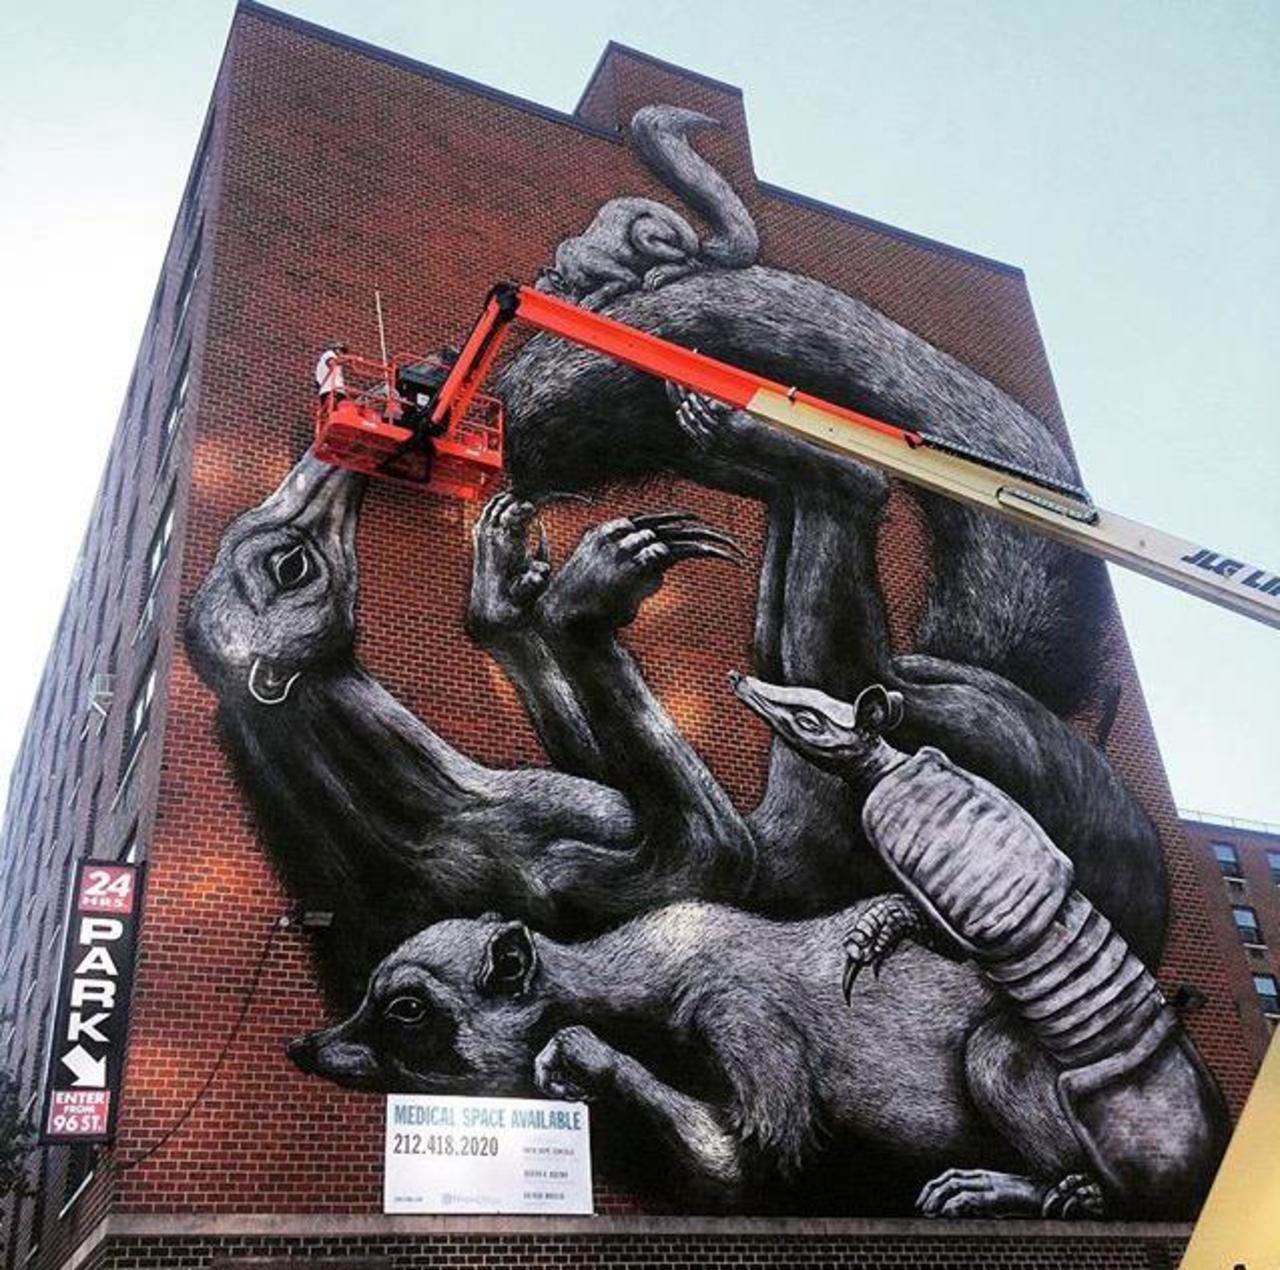 Street Art in progress by ROA in NYC

#art #graffiti #mural #streetart http://t.co/aBVwF99Adn